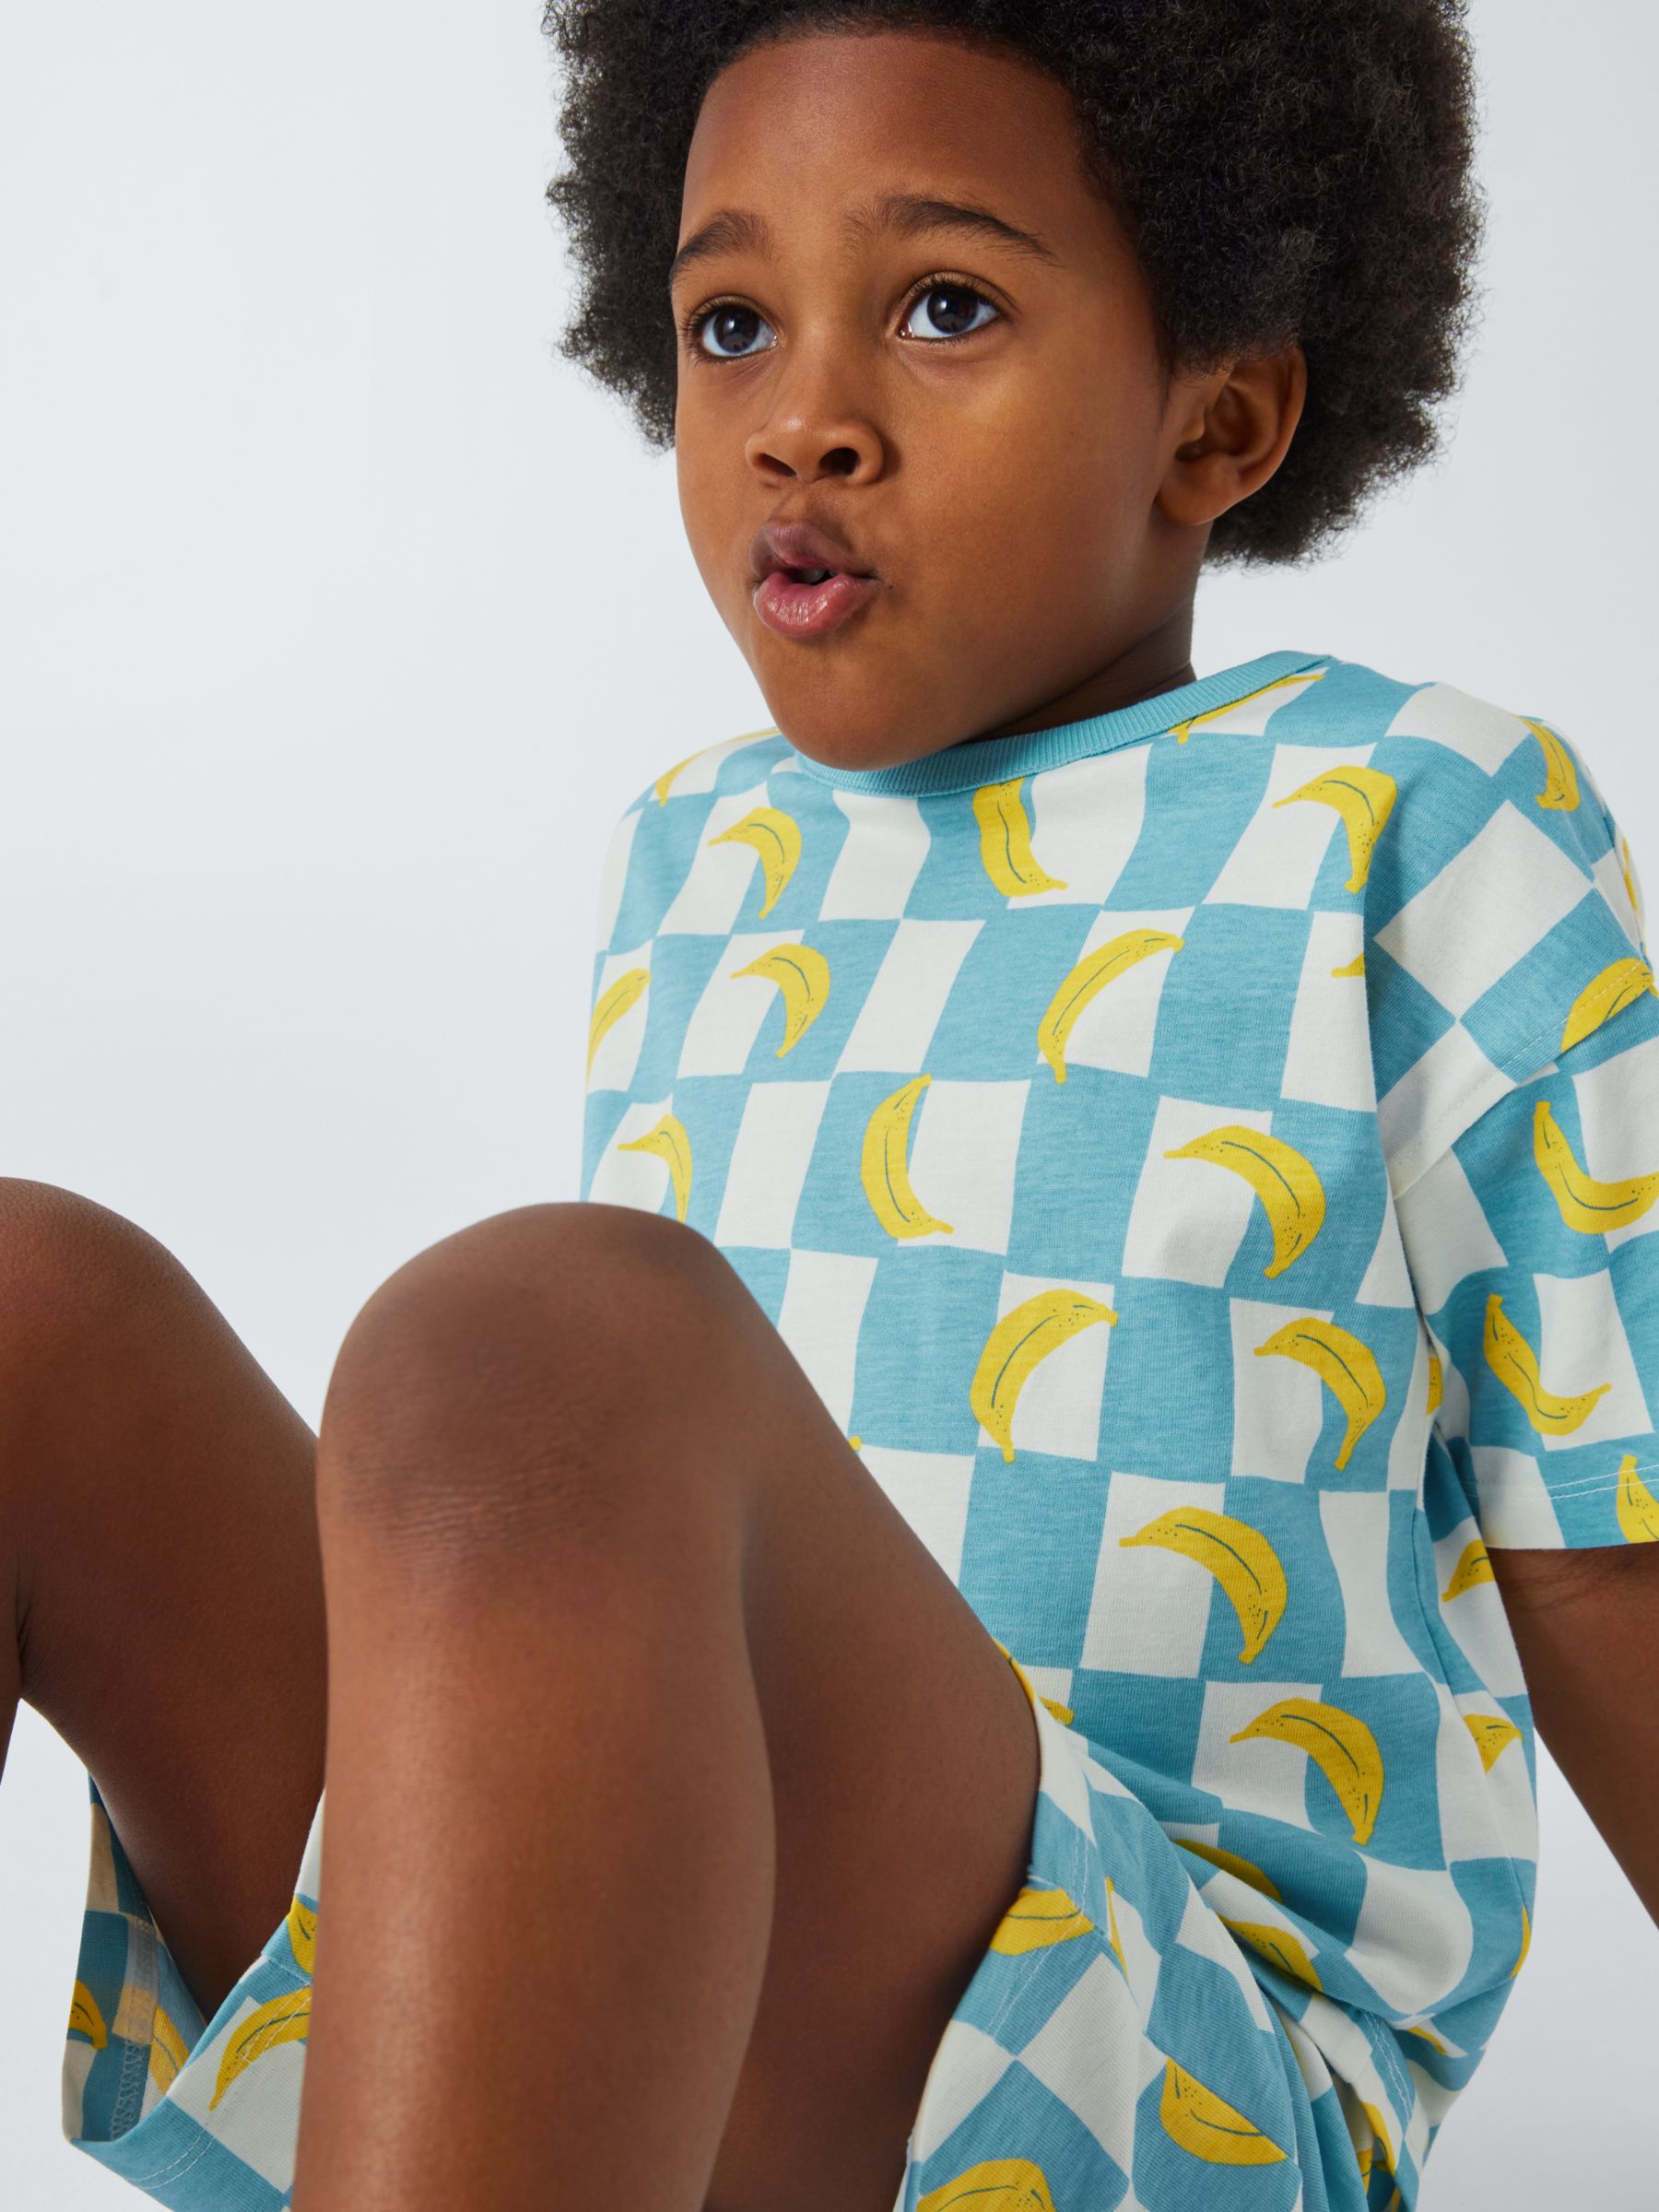 John Lewis ANYDAY Kids' Banana Print Short Pyjamas, Blue/Multi, 10 years